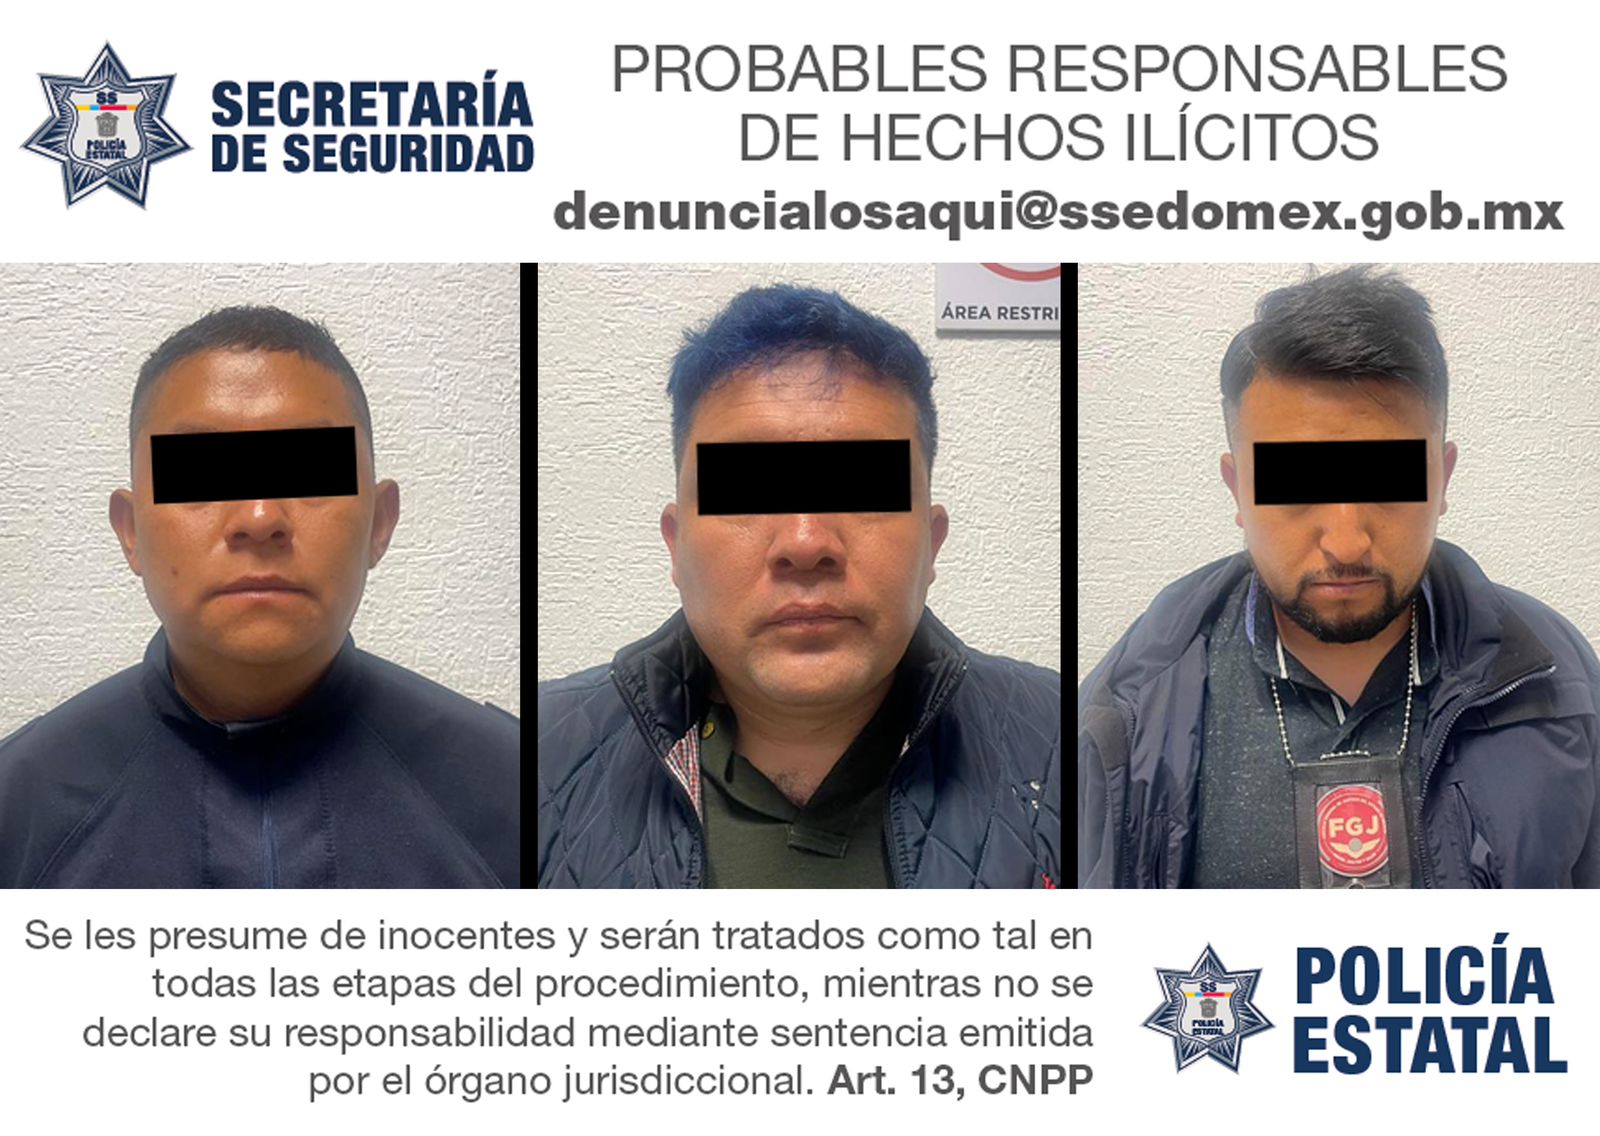 Detienen a Policía Municipal de Zinacantepec y cómplices, acusados de probable extorsión